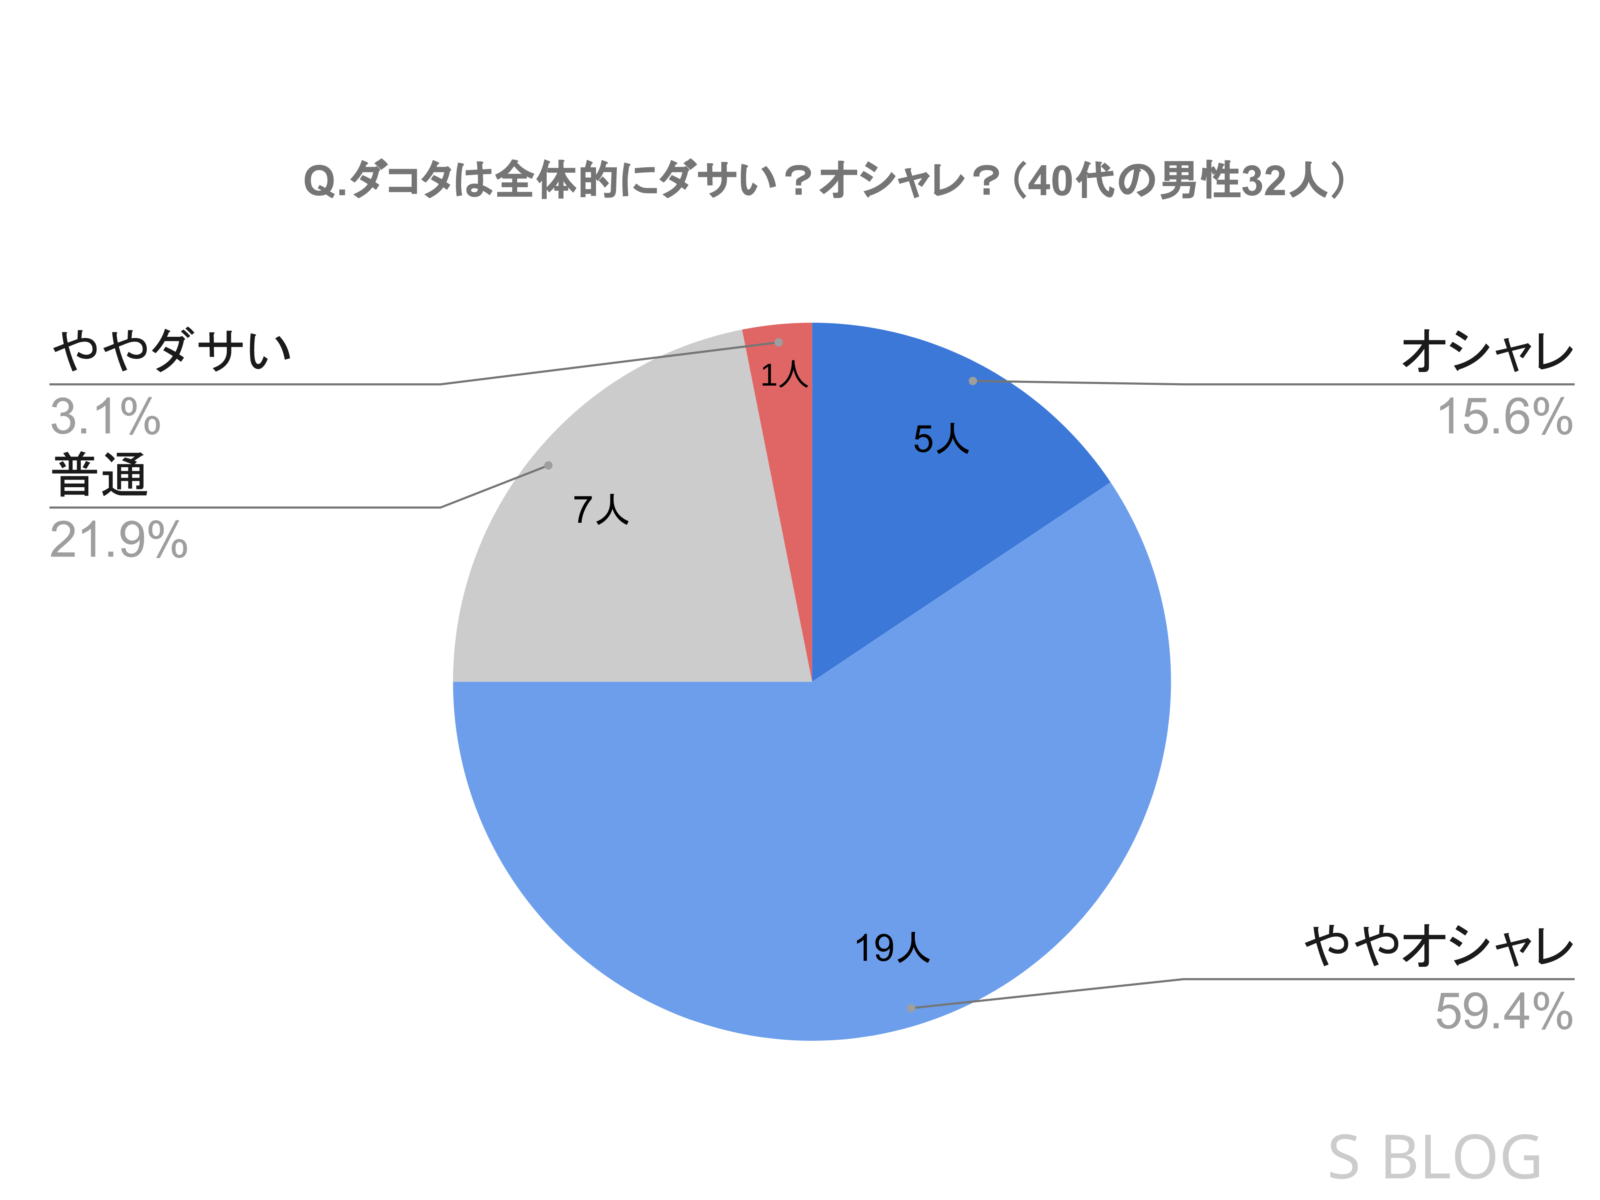 「ダコタは全体的にダサいか？それともオシャレか？」という質問に対する40代男性32人の評判を表した円グラフ